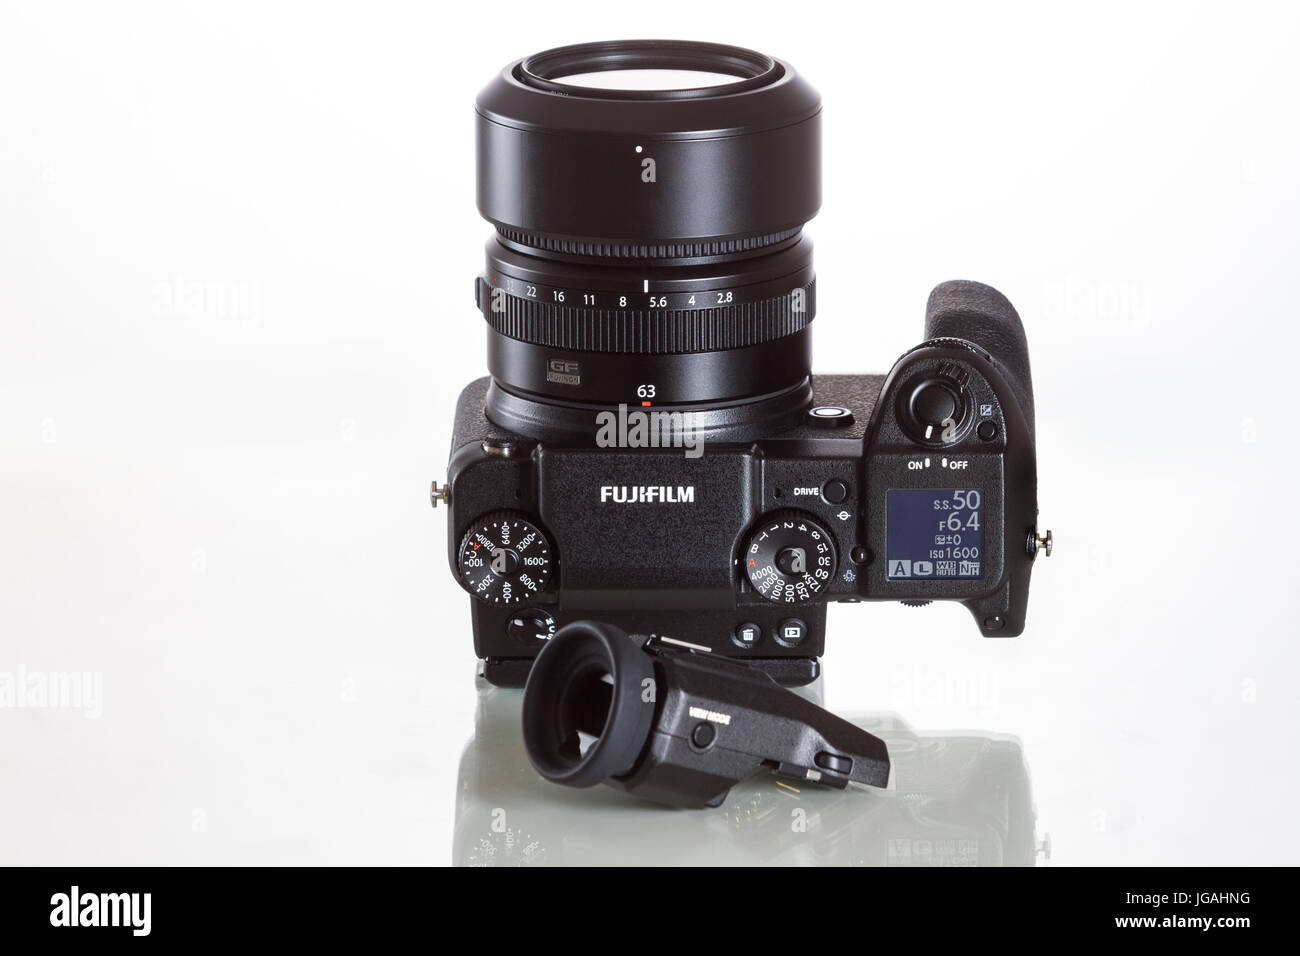 Fujifilm GFX 50er, 51 Megapixel, Sensor digitale Mittelformatkamera mit zusätzlichen elektronischen Sucher 3.69M-Dot OLED EVF auf weißen reflektierenden zurück Stockfoto